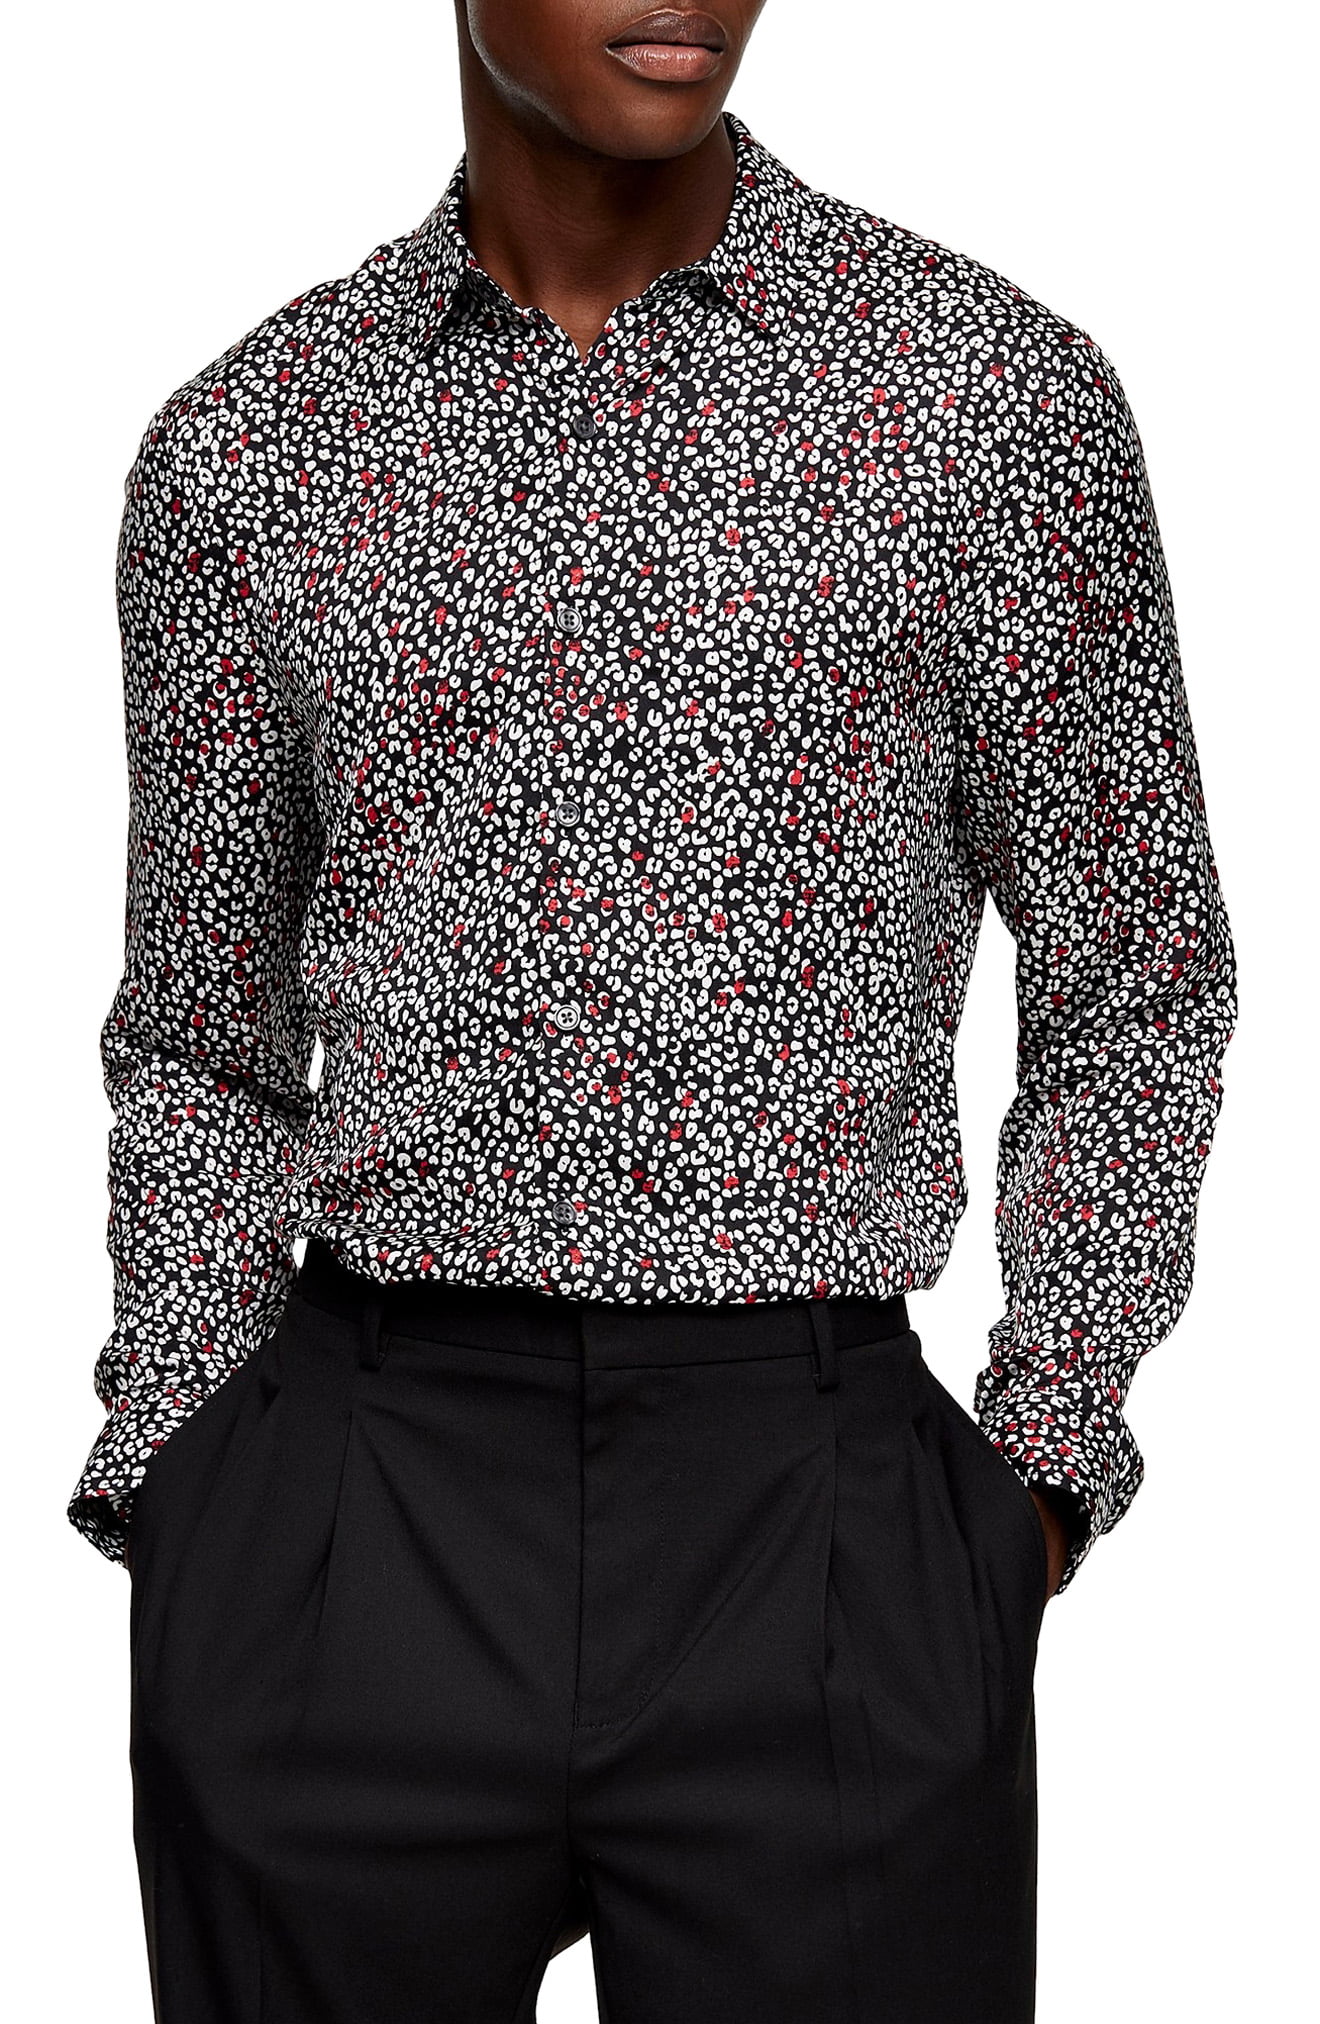 Menâs Topman Slim Fit Leopard Button-Up Shirt, Size Medium - Black | The Fashionisto